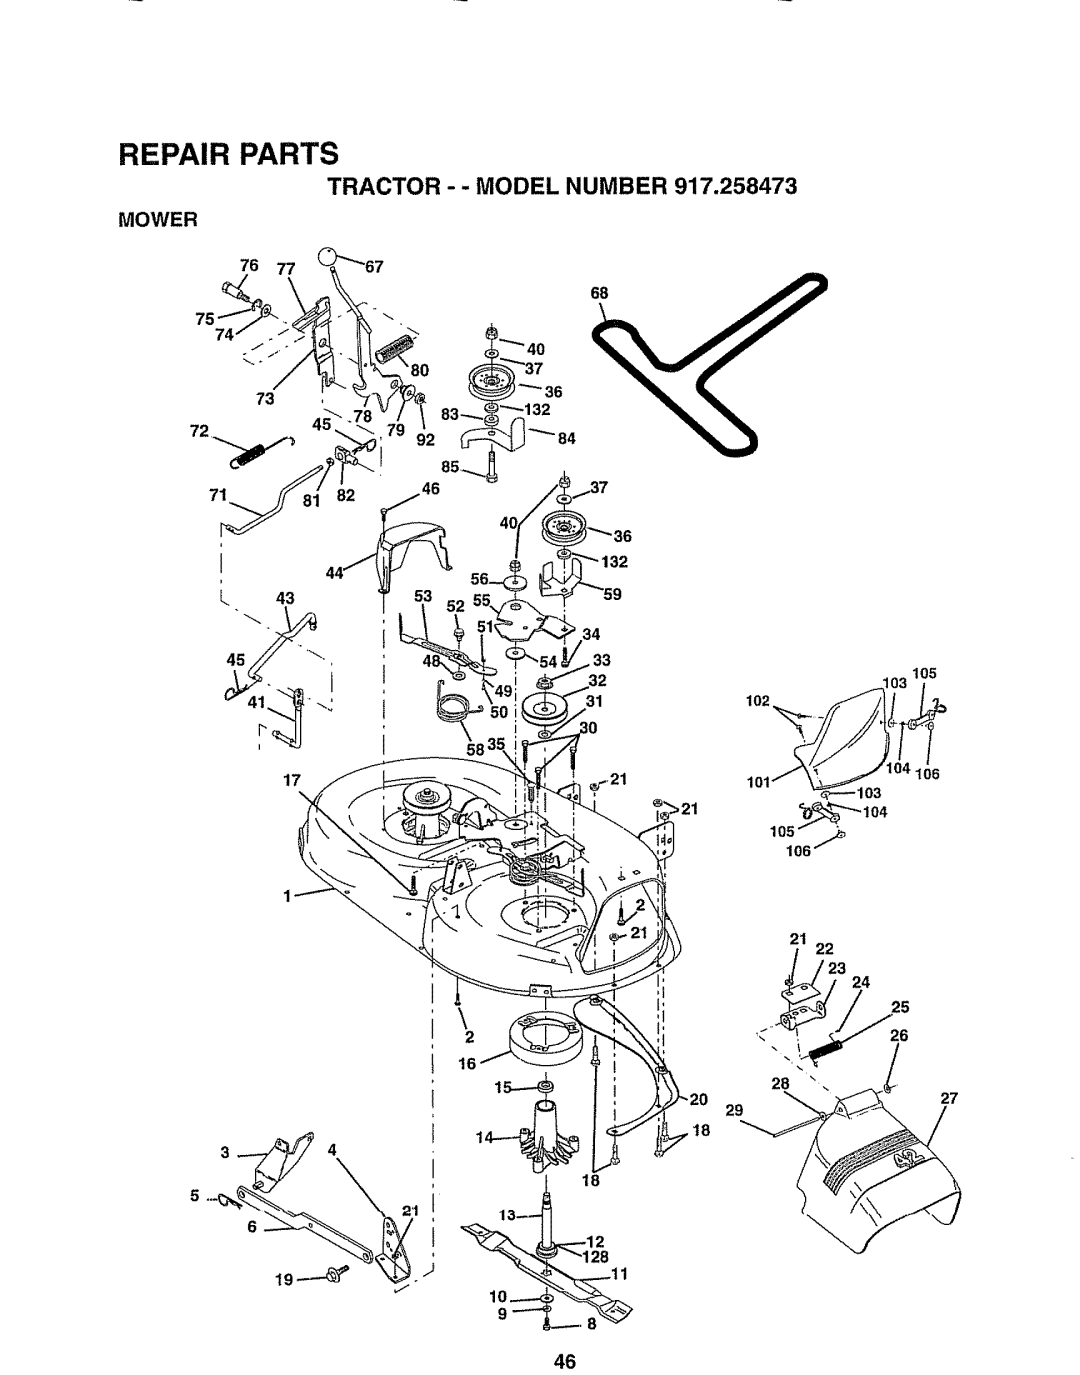 Sears 917.258473 owner manual Mower, 79 46 52, 2 16, Repair Parts, Tractor - - Model Number 